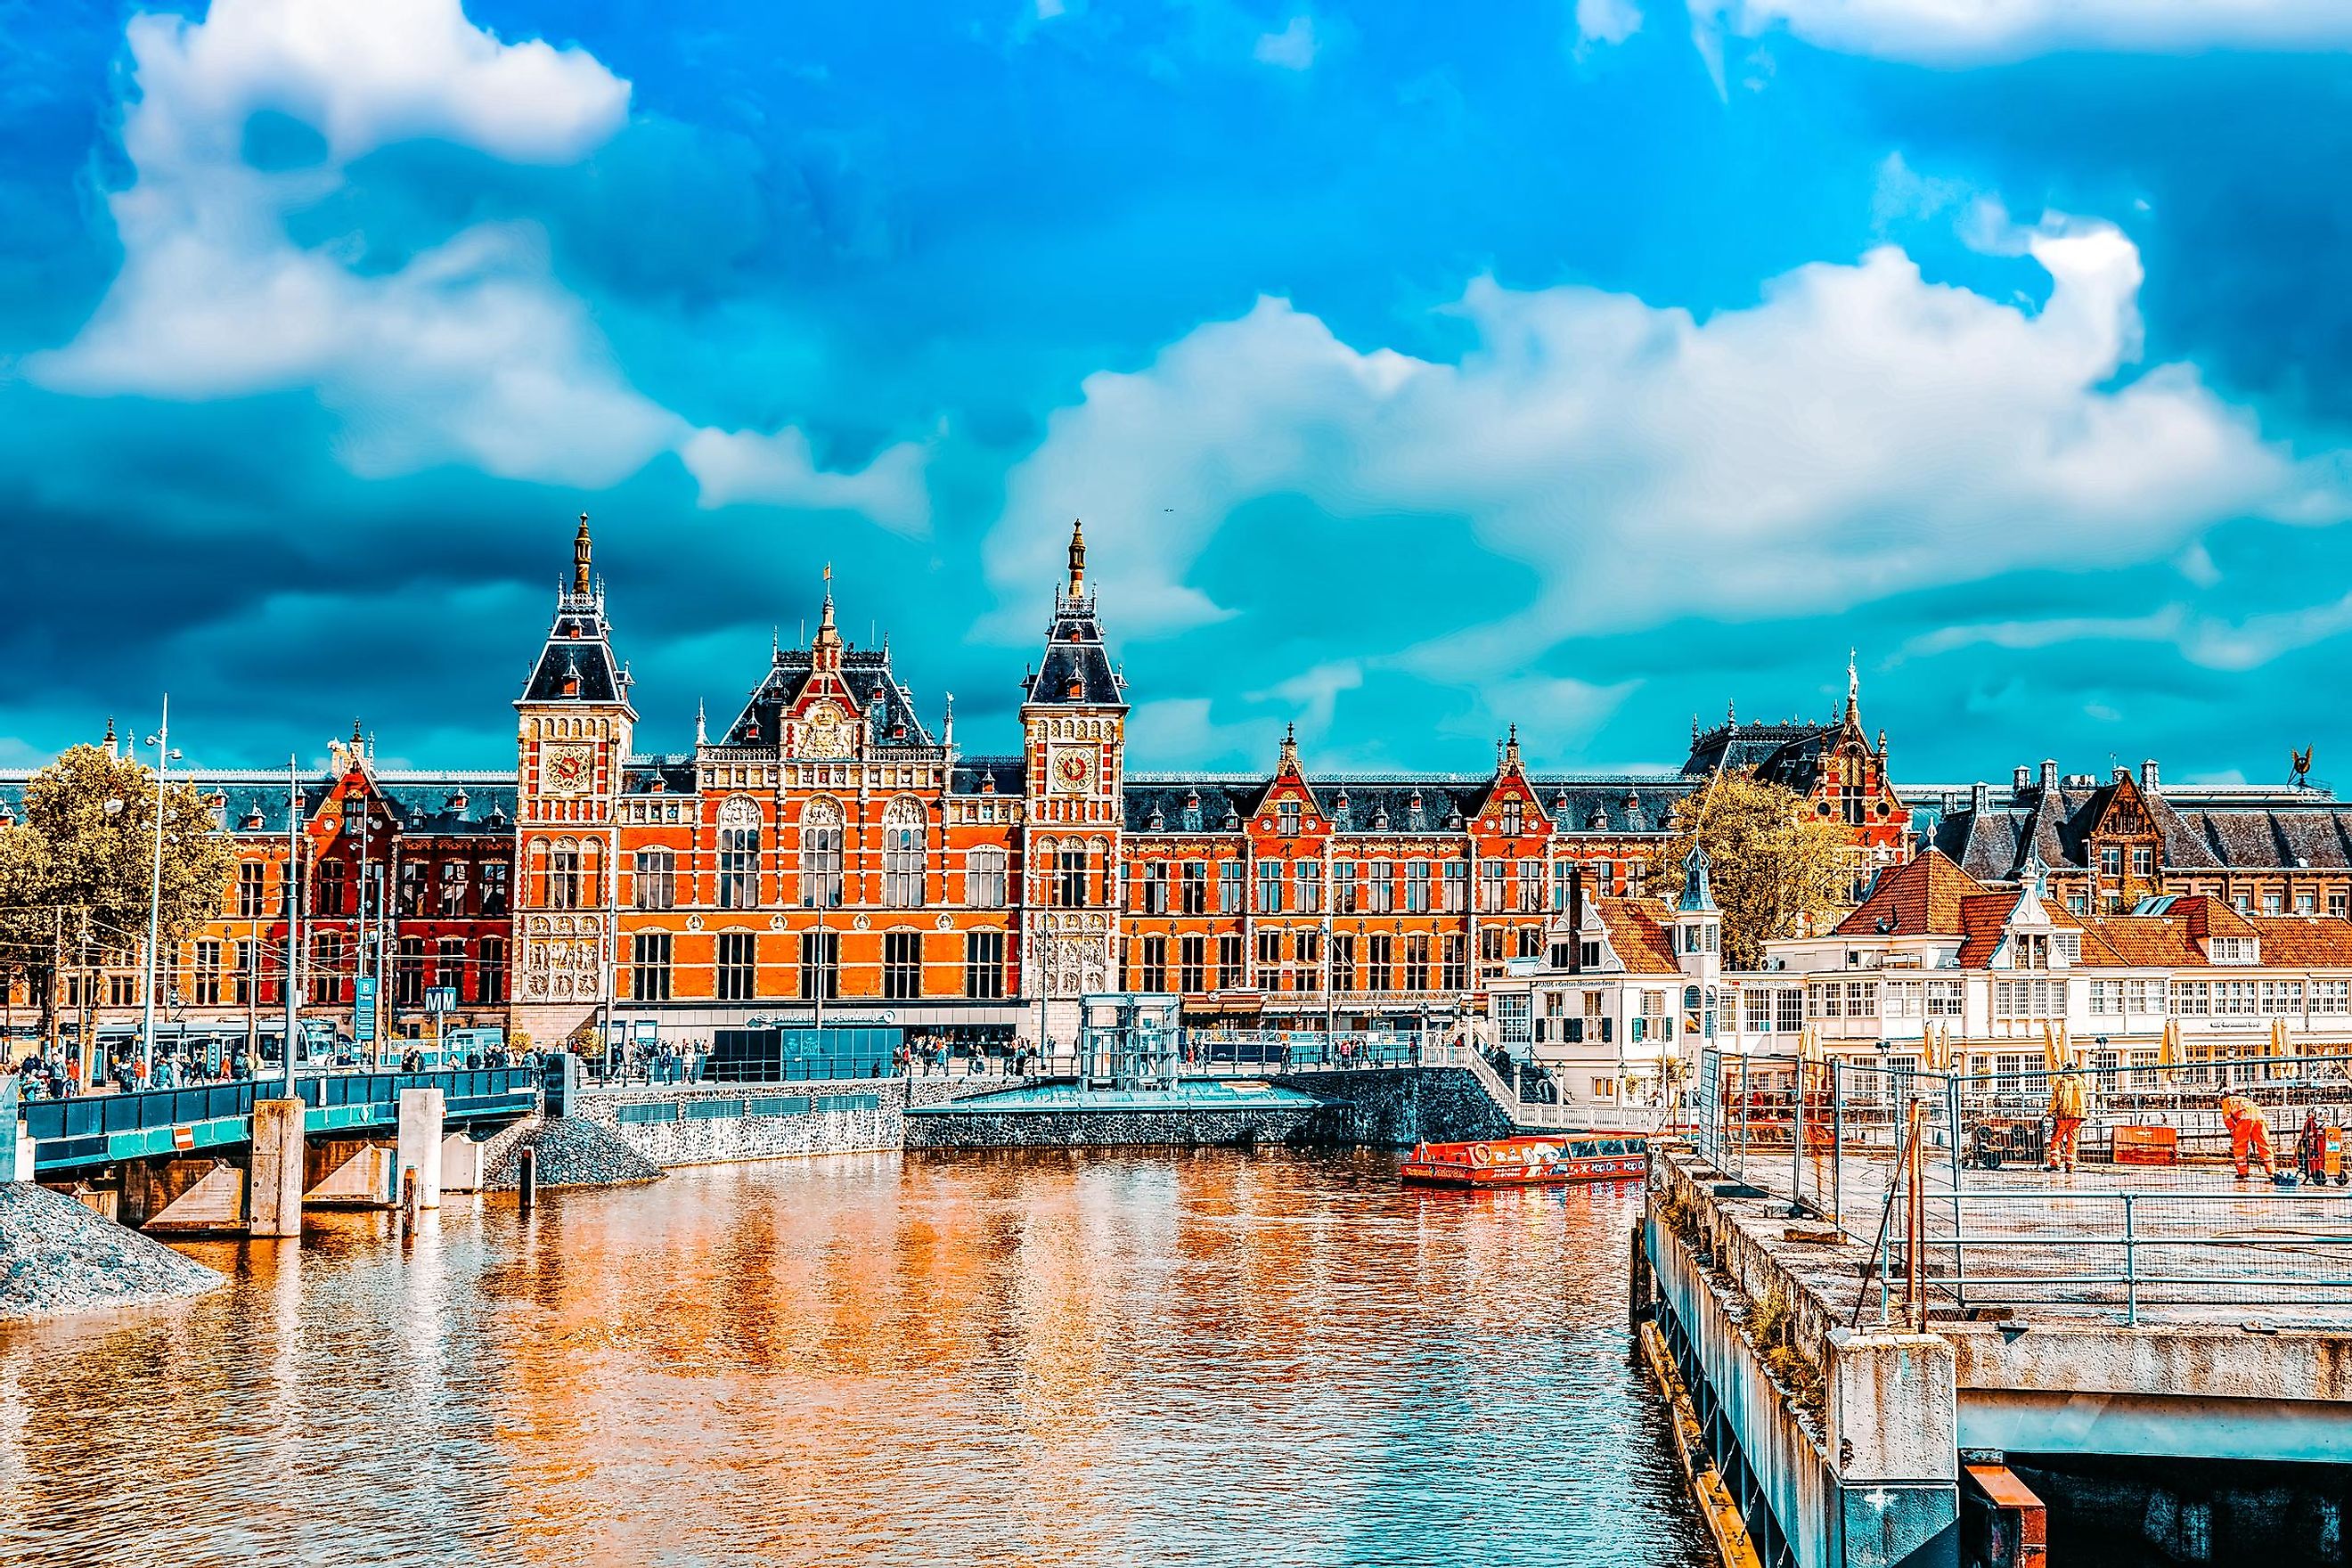 Amsterdam, Holland, Netherlands. Image credit: V_E/Shutterstock